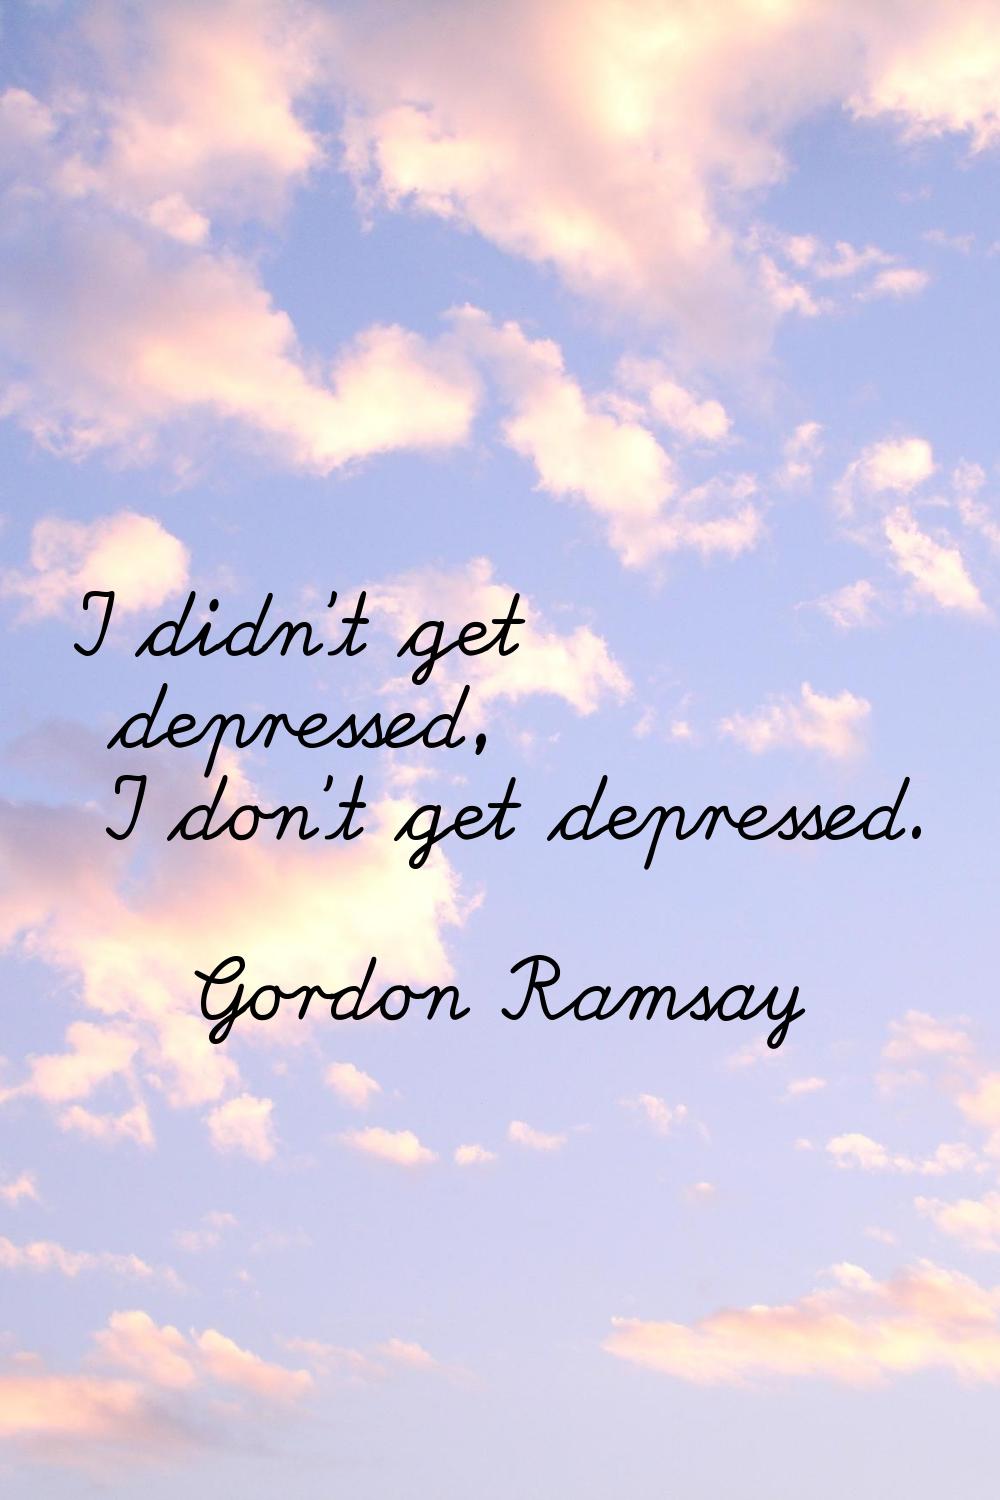 I didn't get depressed, I don't get depressed.